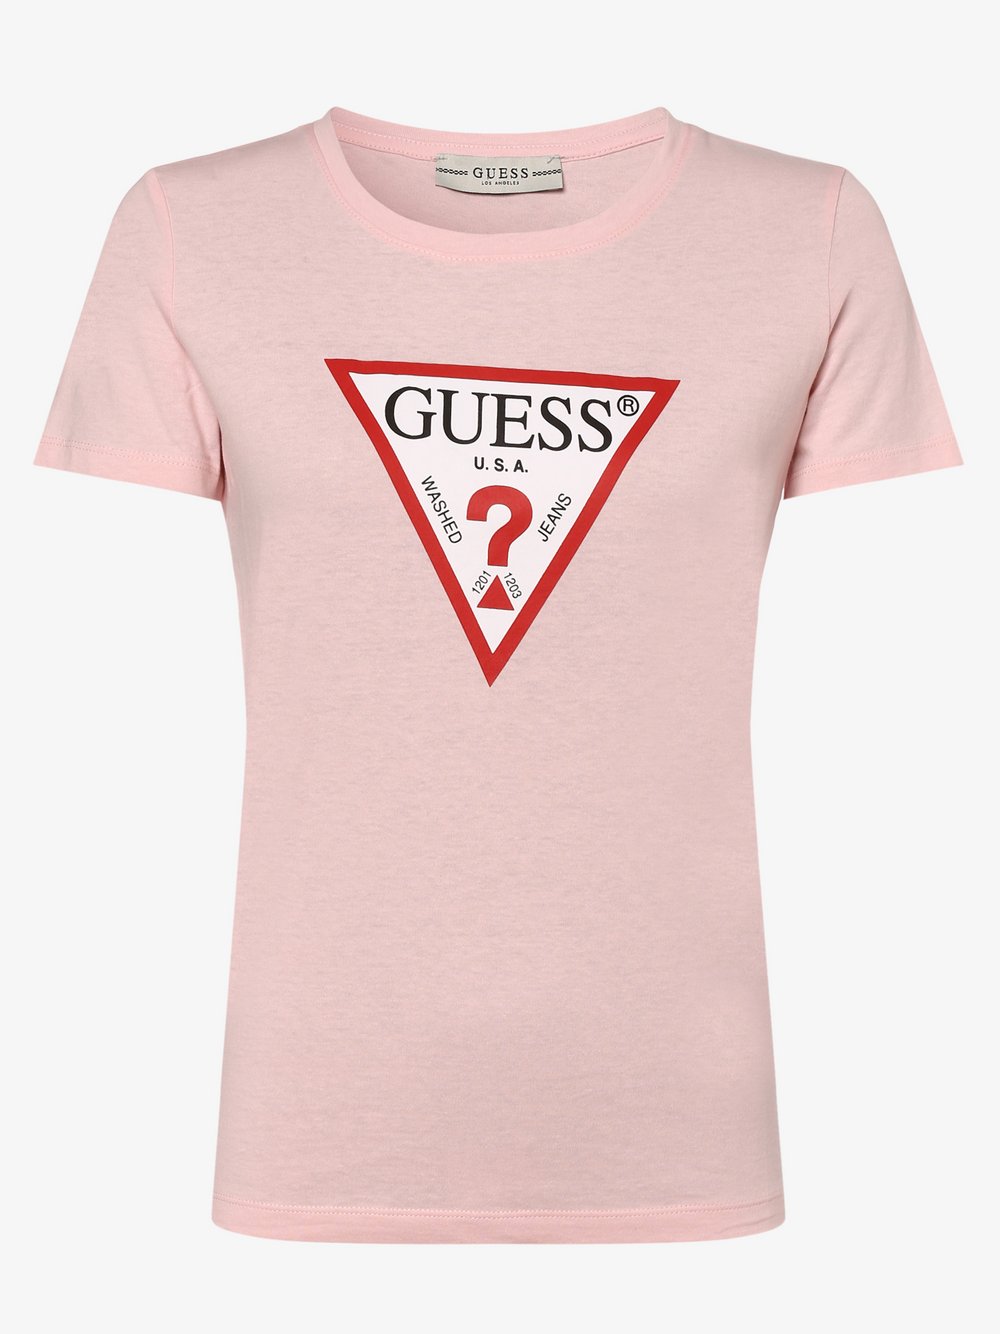 GUESS - T-shirt damski, różowy